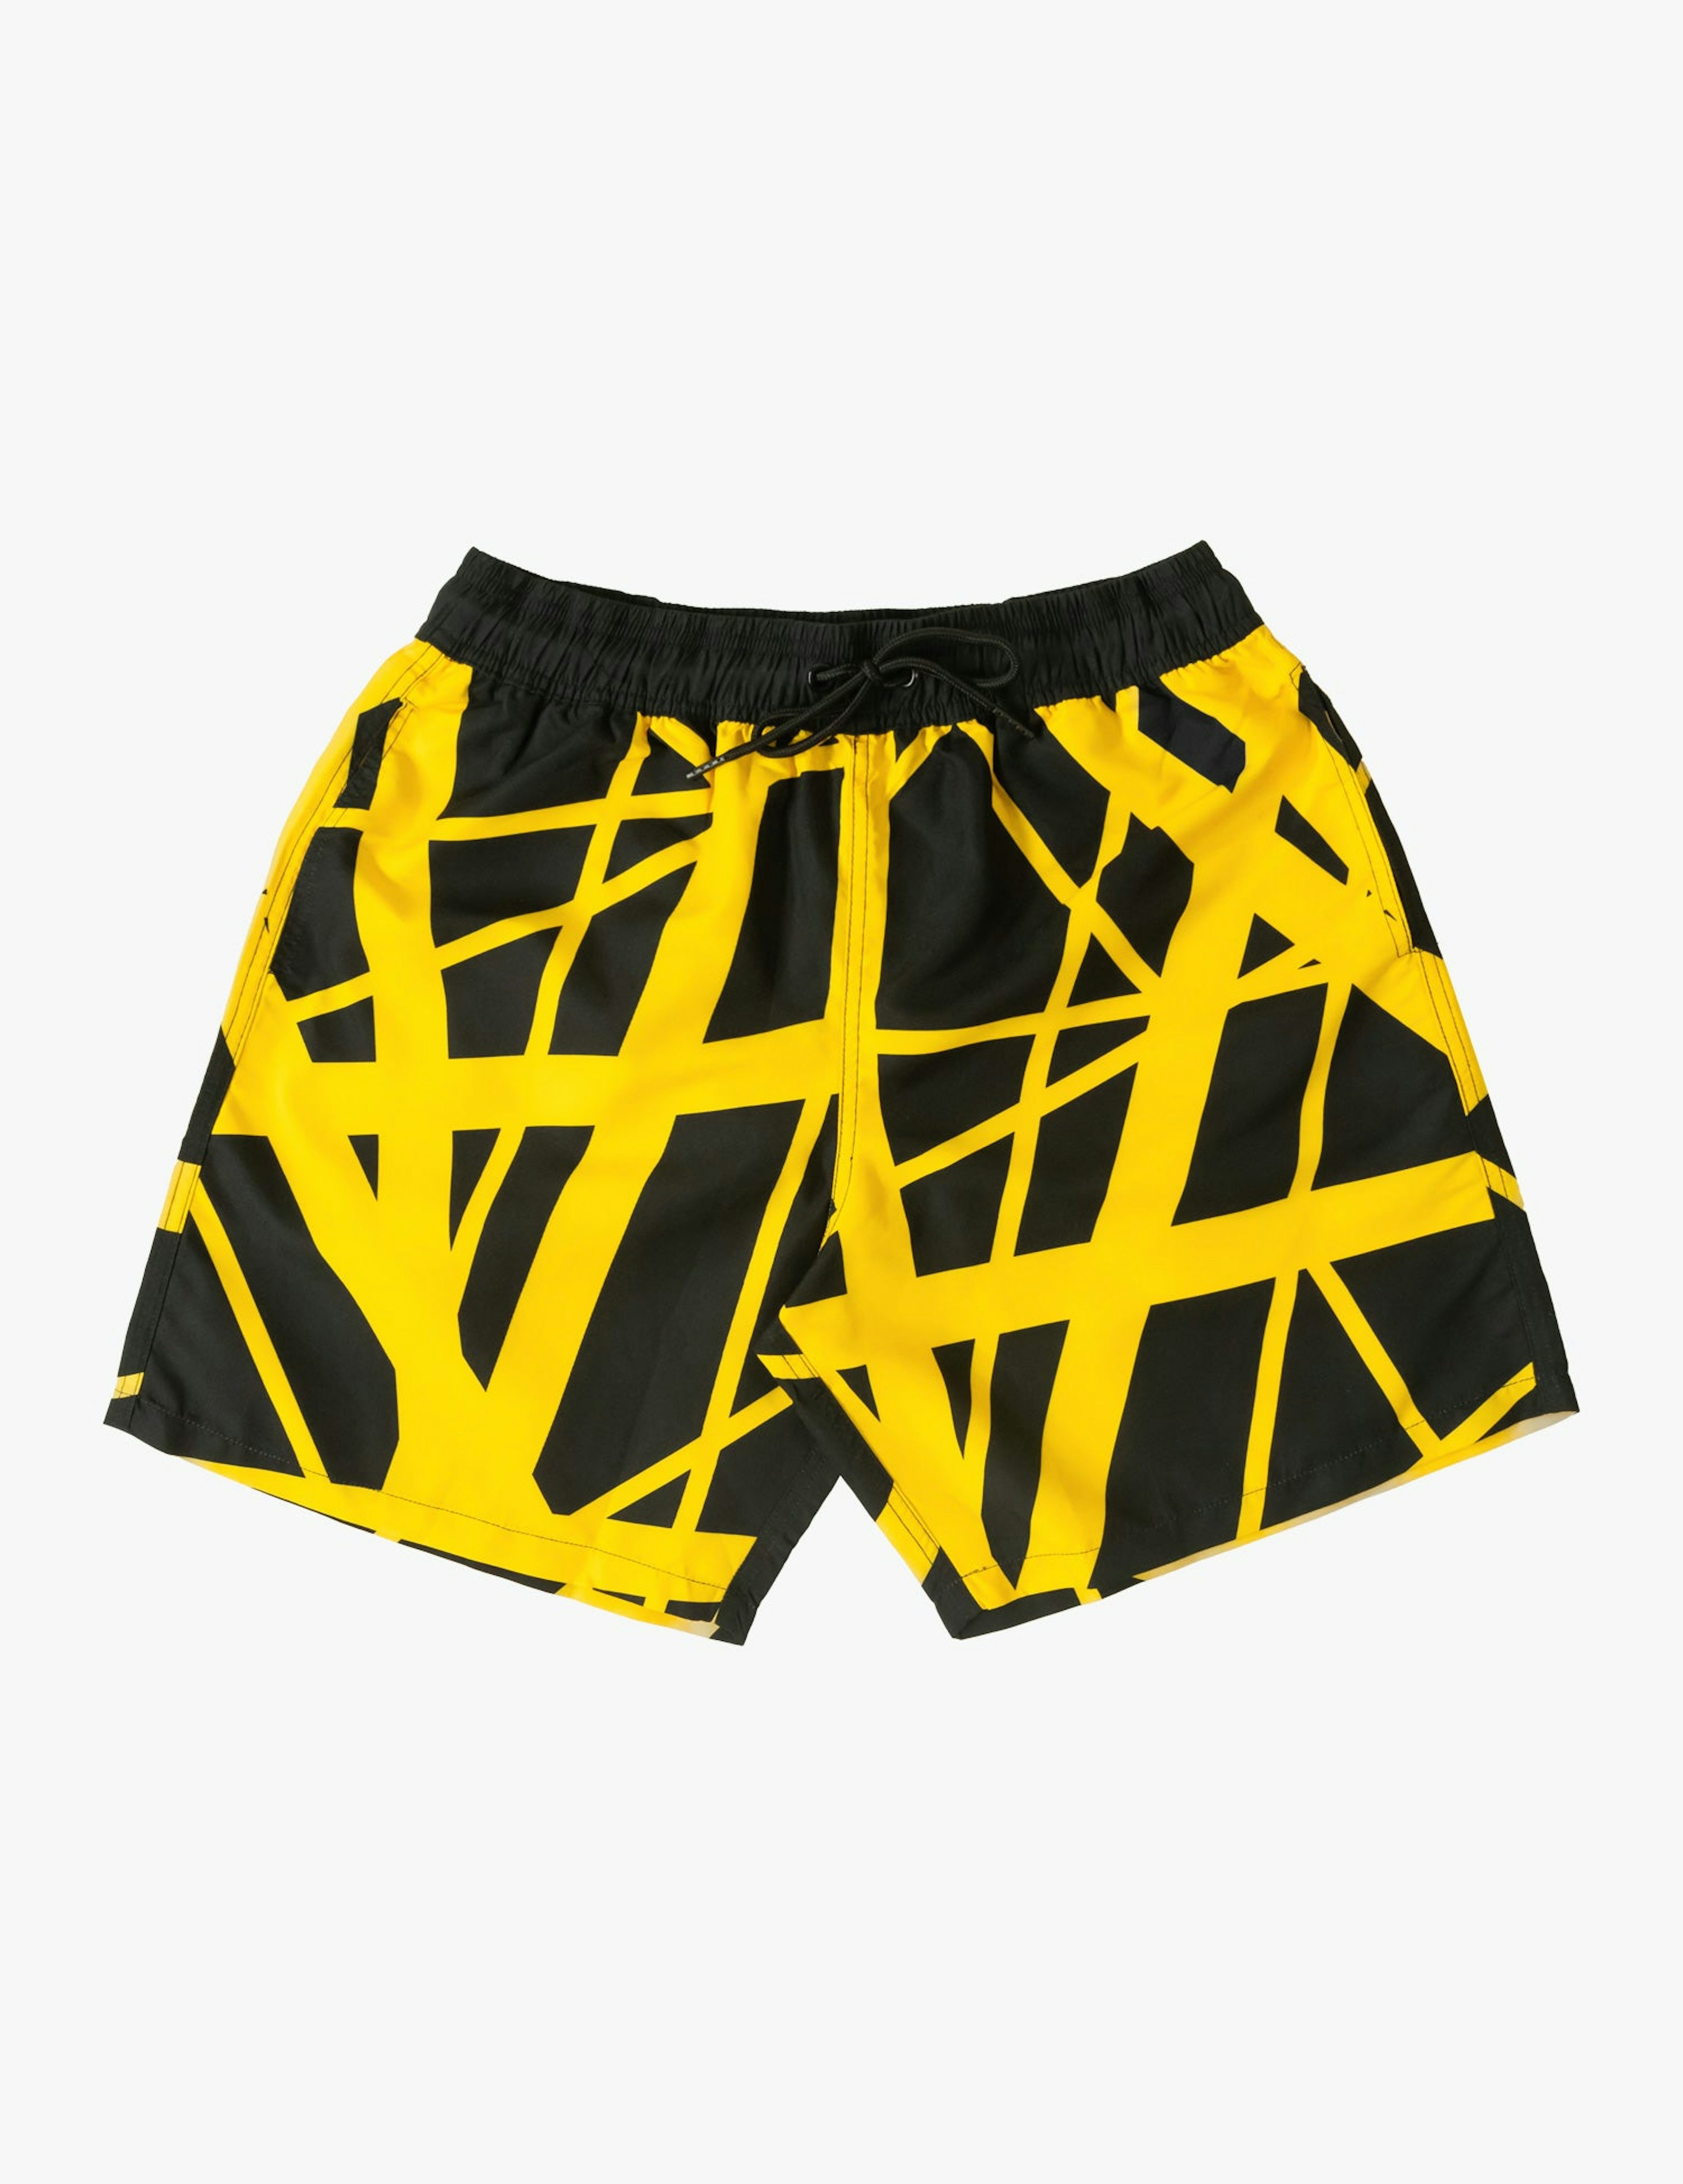 Eddie Van Halen Black/Yellow Swim Shorts